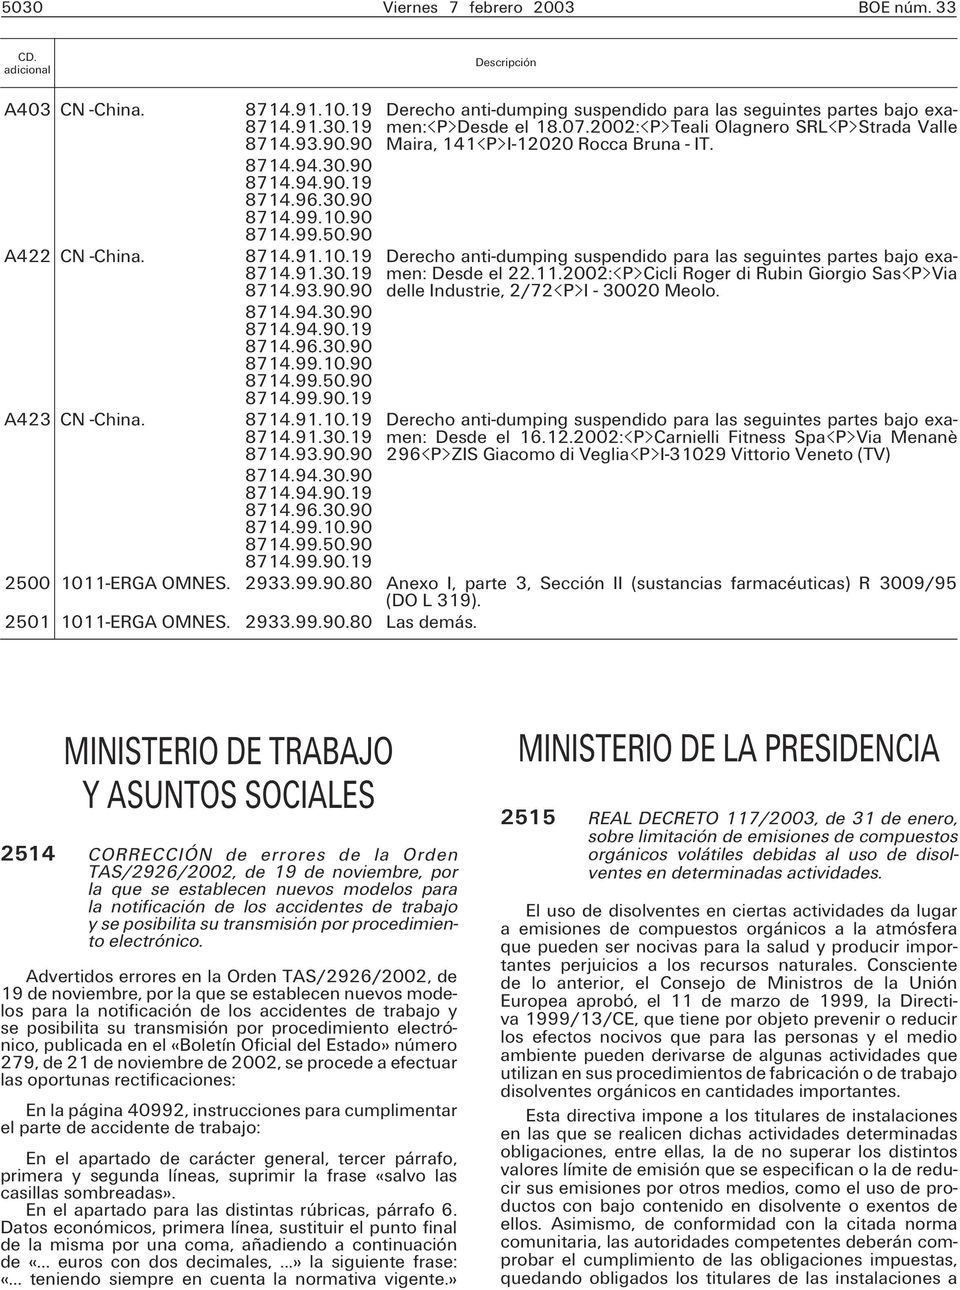 07.2002: P Teali Olagnero SRL P Strada Valle Maira, 141 P I-12020 Rocca Bruna - IT. Derecho anti-dumping suspendido para las seguintes partes bajo examen: Desde el 22.11.